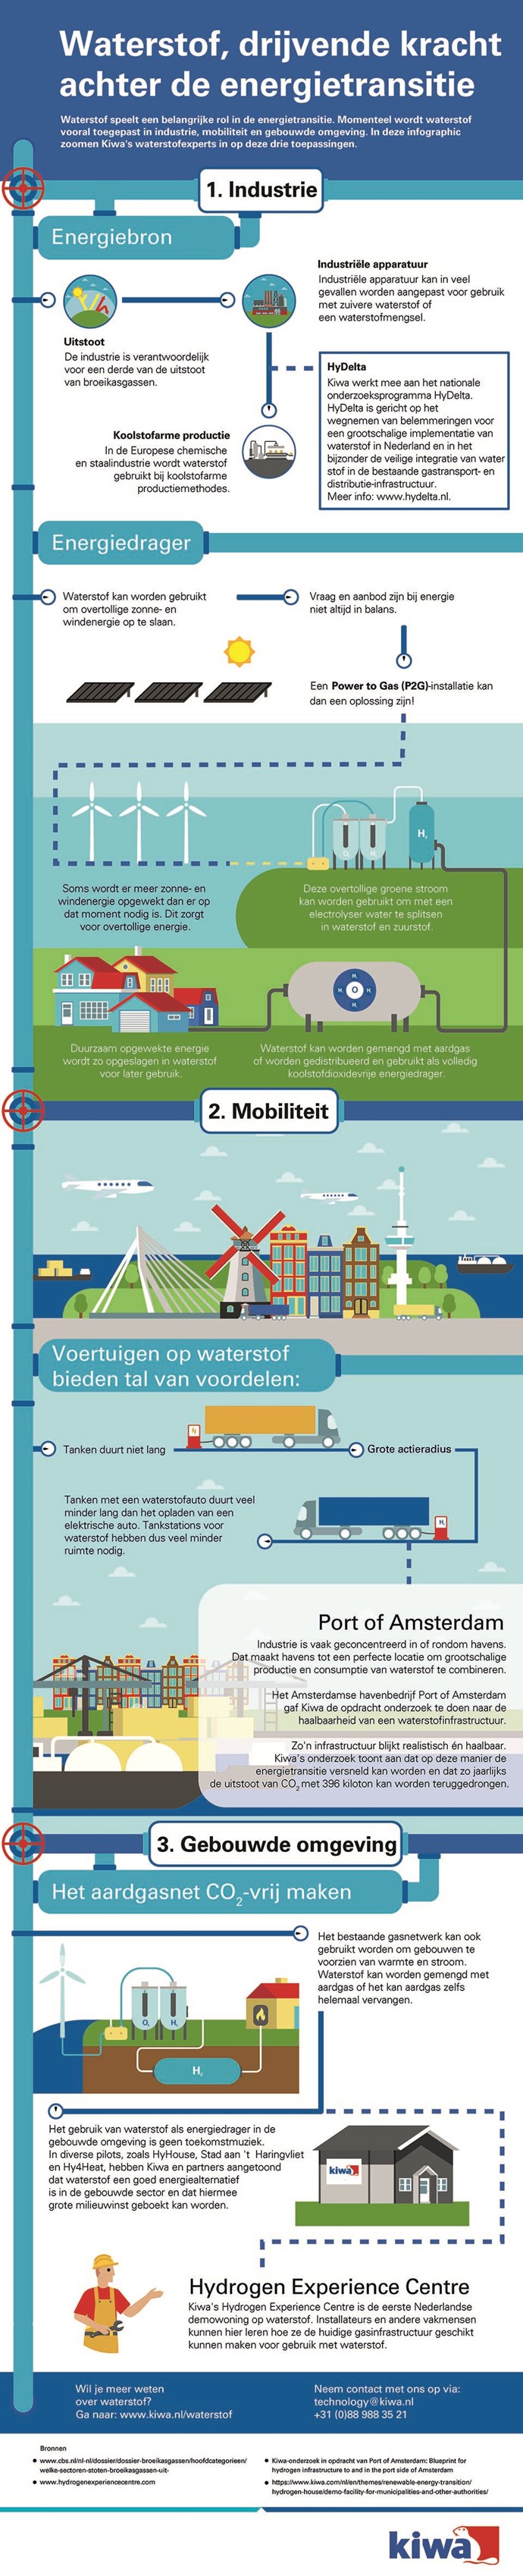 Kiwa_Infographic Waterstof_Waterstof Drijvende kracht achter de energietransitie_NL.jpg